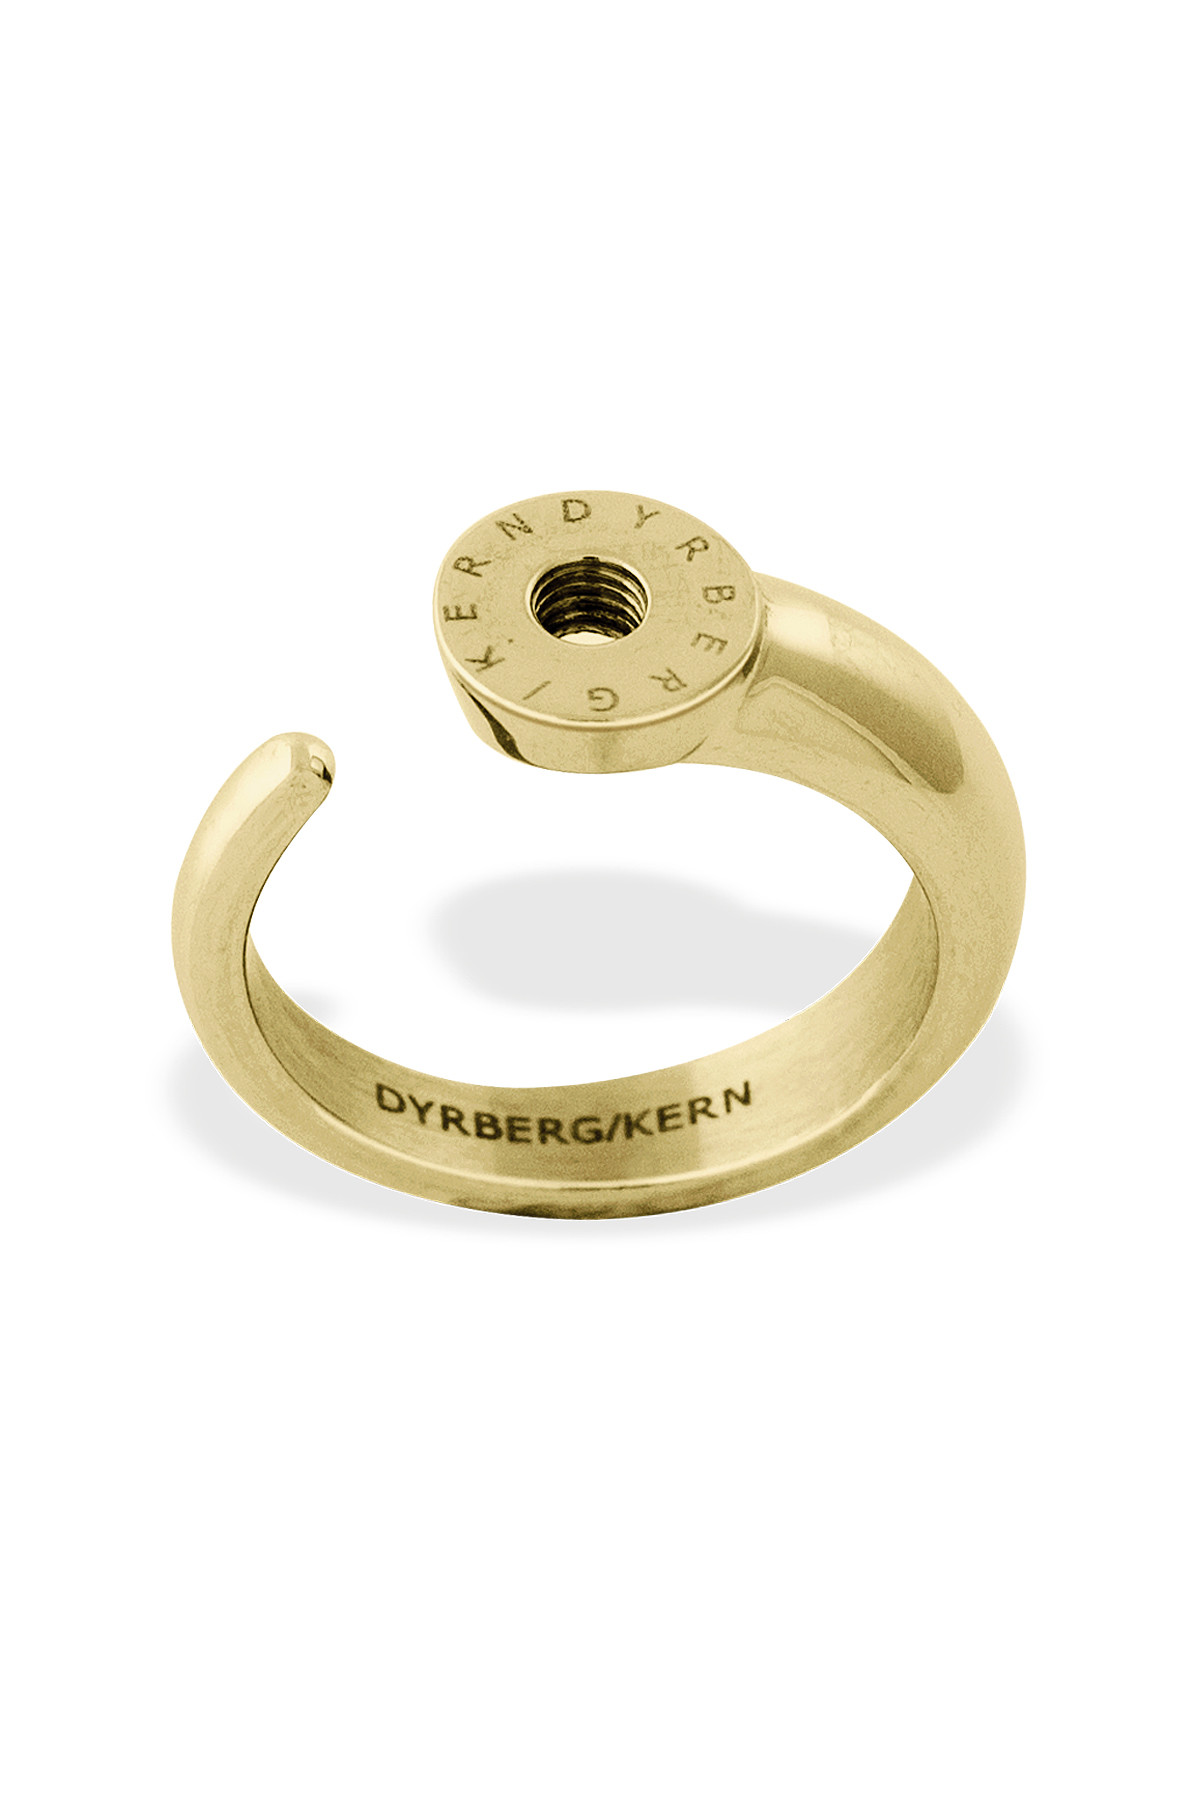 Billede af Dyrberg/Kern Ring Ring, Farve: Guld, Størrelse: IIII/60, Dame hos Dyrberg/Kern